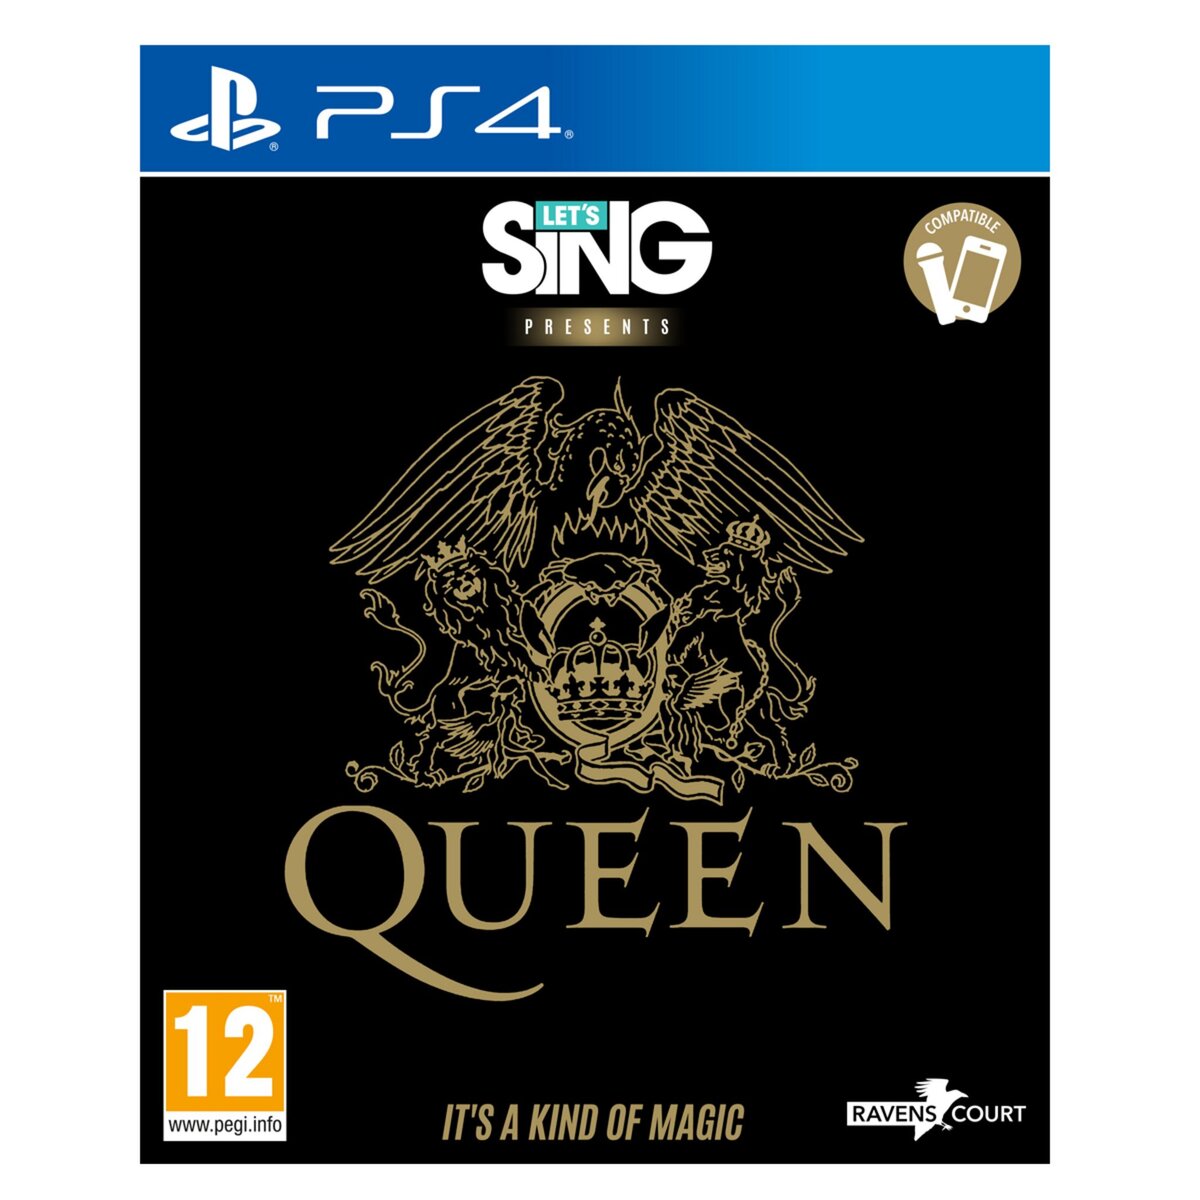 Let's Sing Queen PS4